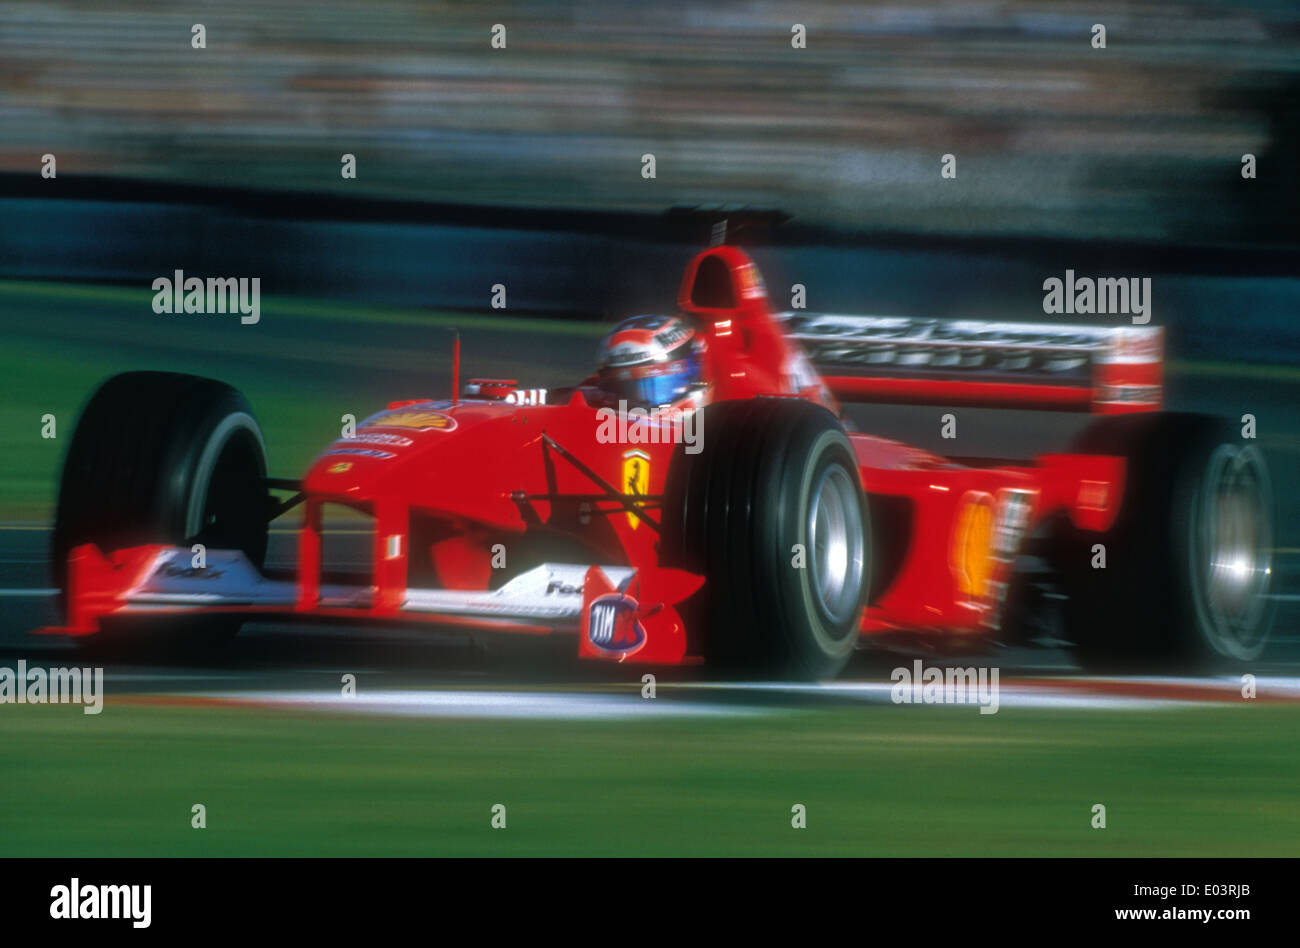 El 2000 Australian Grand Prix de Fórmula 1. Michael Schumacher va a ganar la carrera. Foto de stock